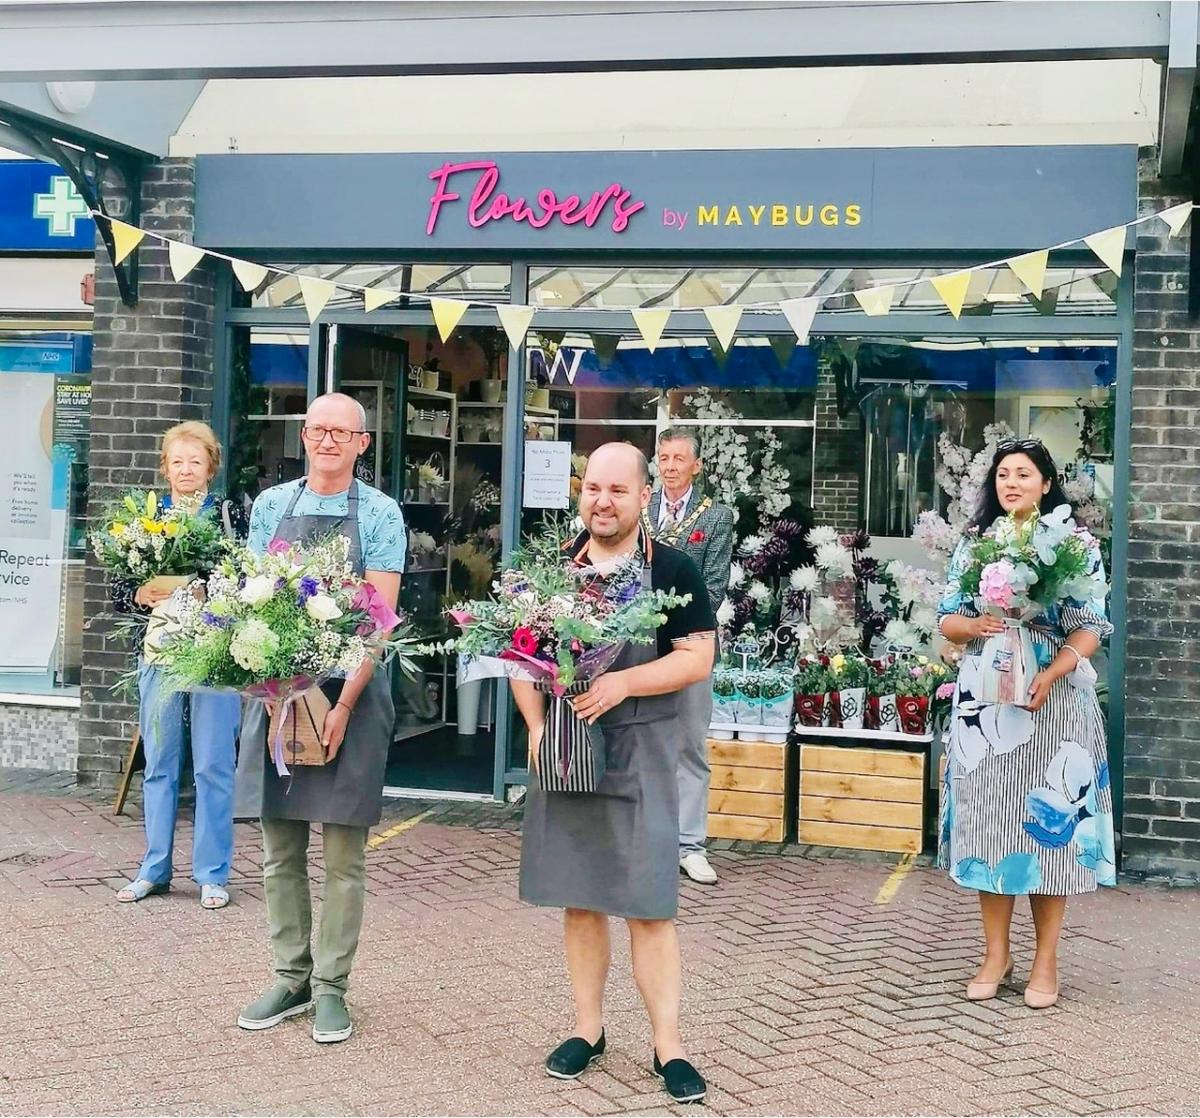 Hailsham florists trained in secret ahead of surprise launch